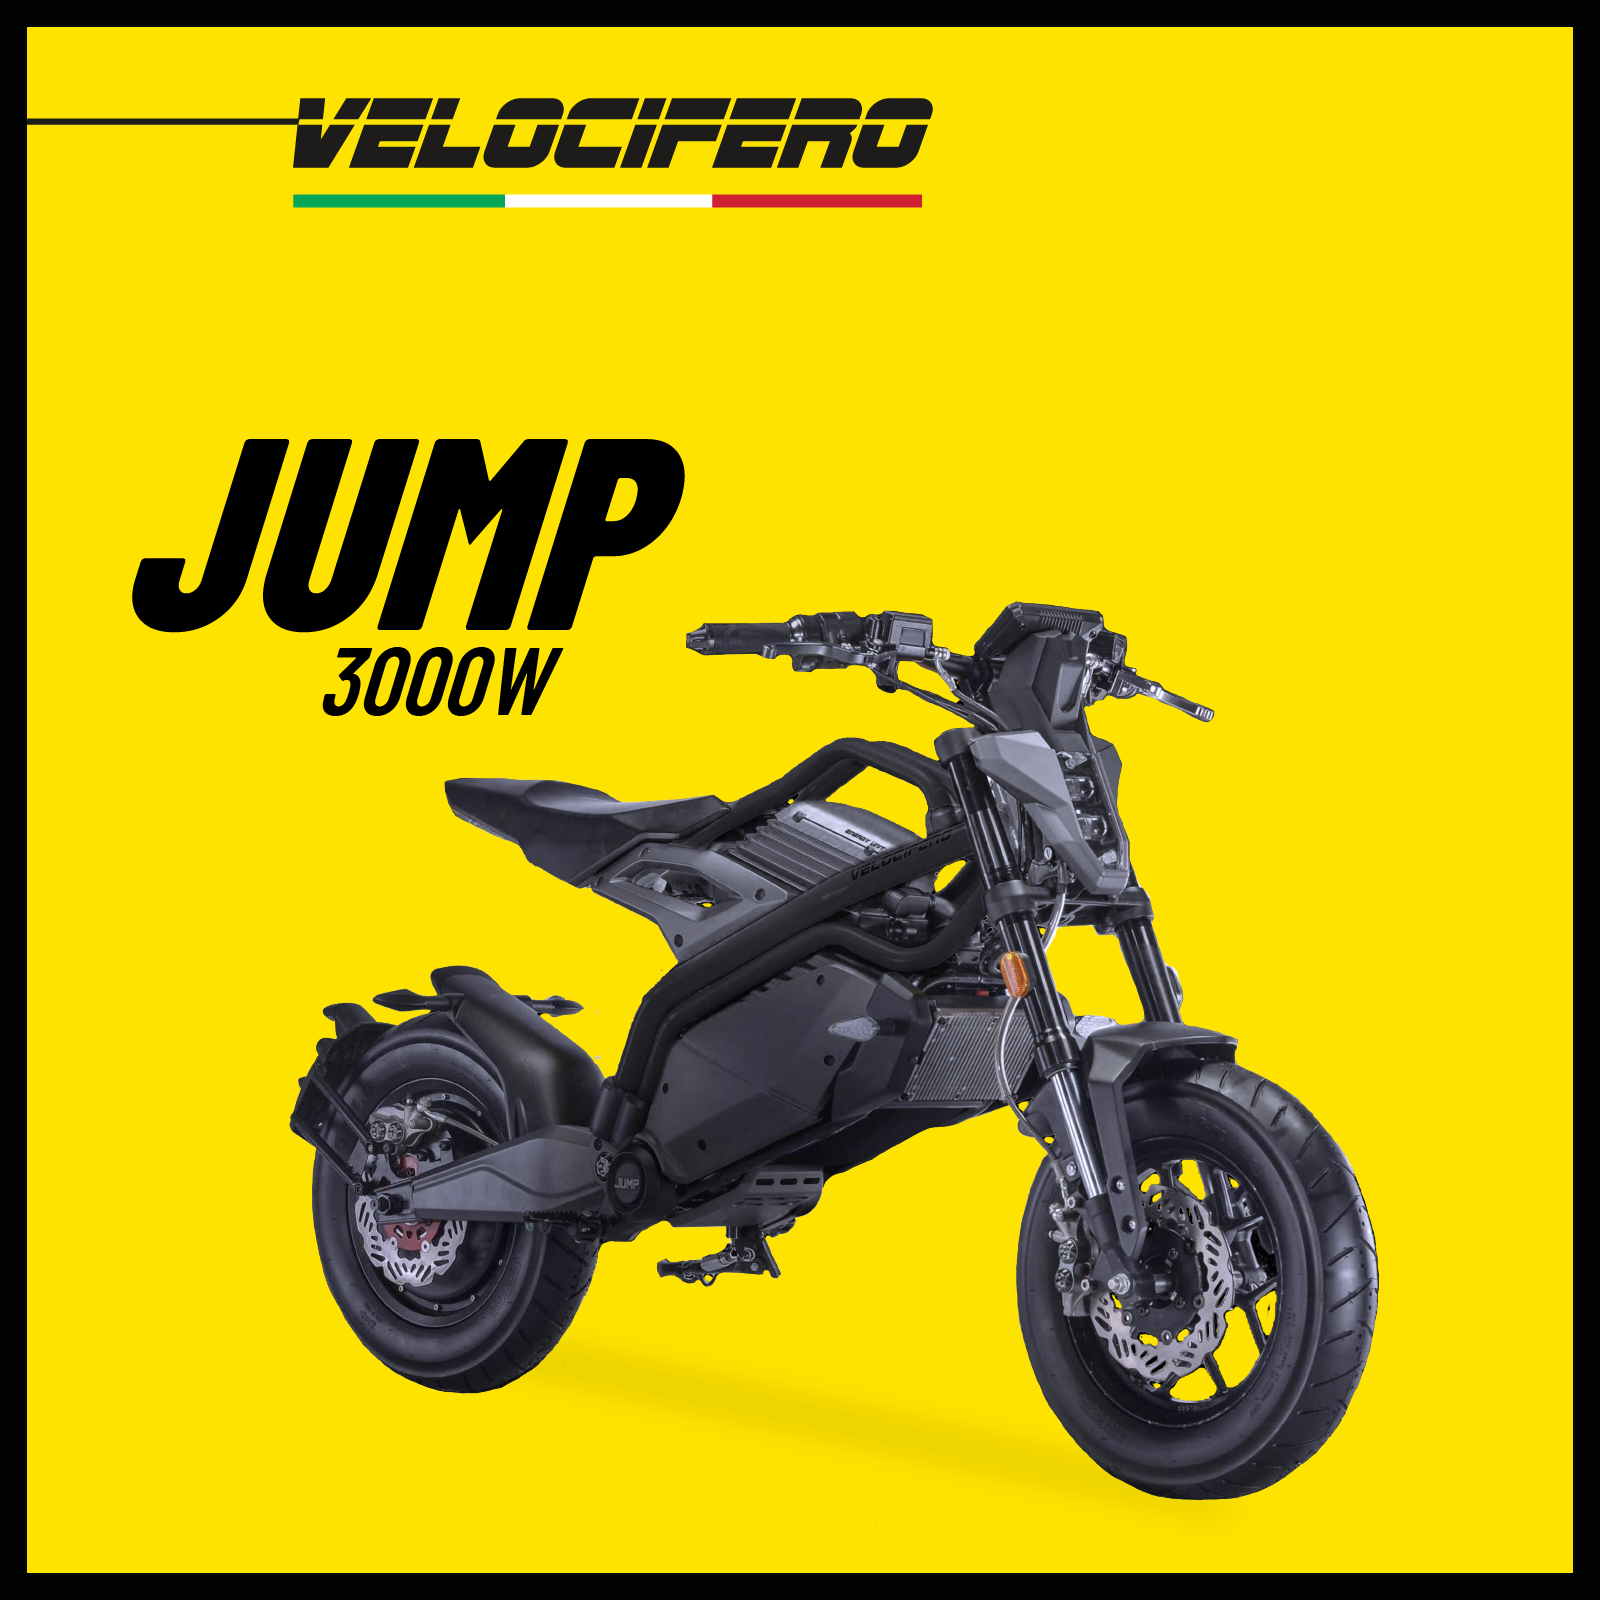 Электромотоцикл Jump 3000W -городской байк от бренда Velocifero, с привлекательным спортивно-футуристическим дизайном, серый